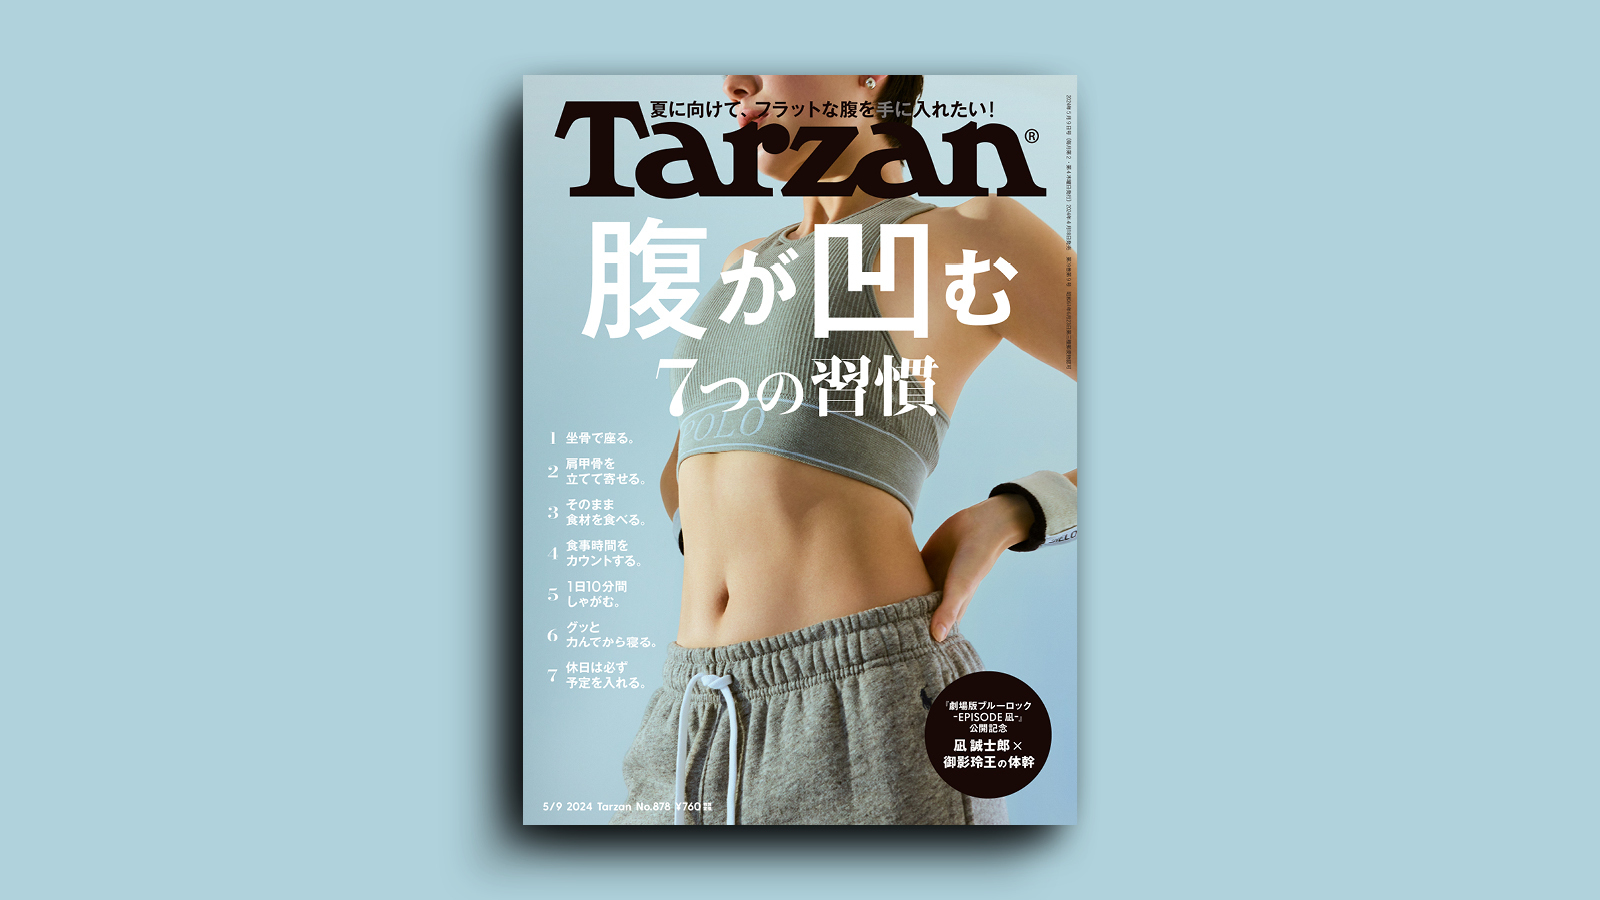 4/18（木）発売の雑誌『Tarzan』は「腹が凹む7つの習慣」特集